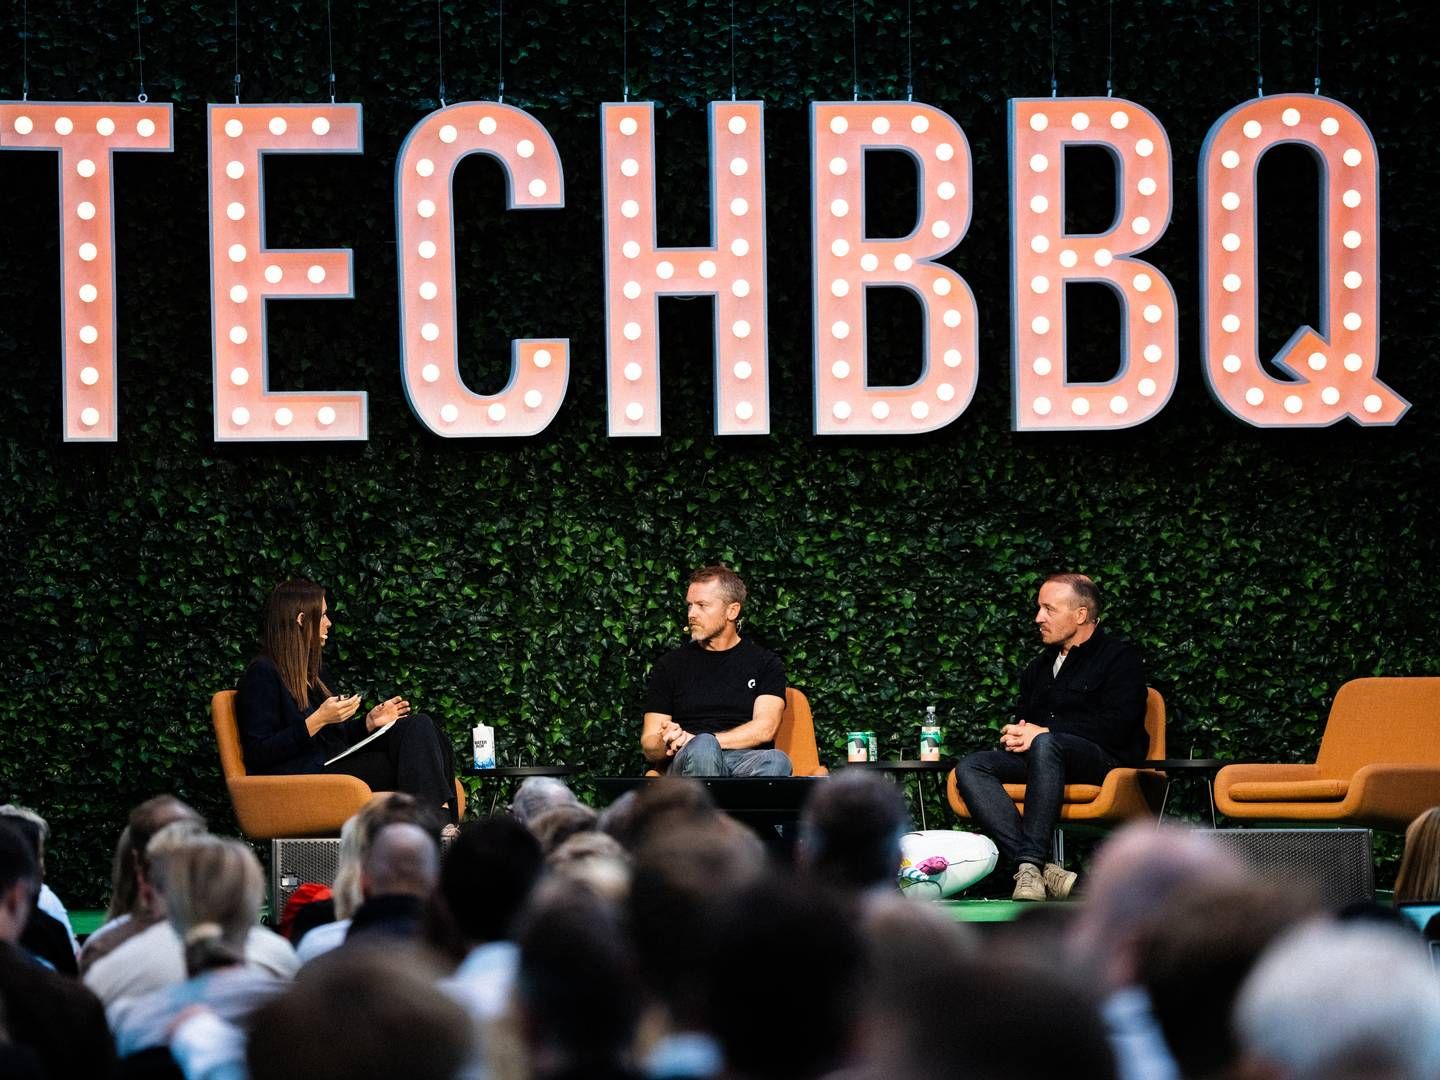 TechBBQ afholdes onsdag og torsdag i Lokomotivværkstedet i København. | Foto: Techbbq/pr